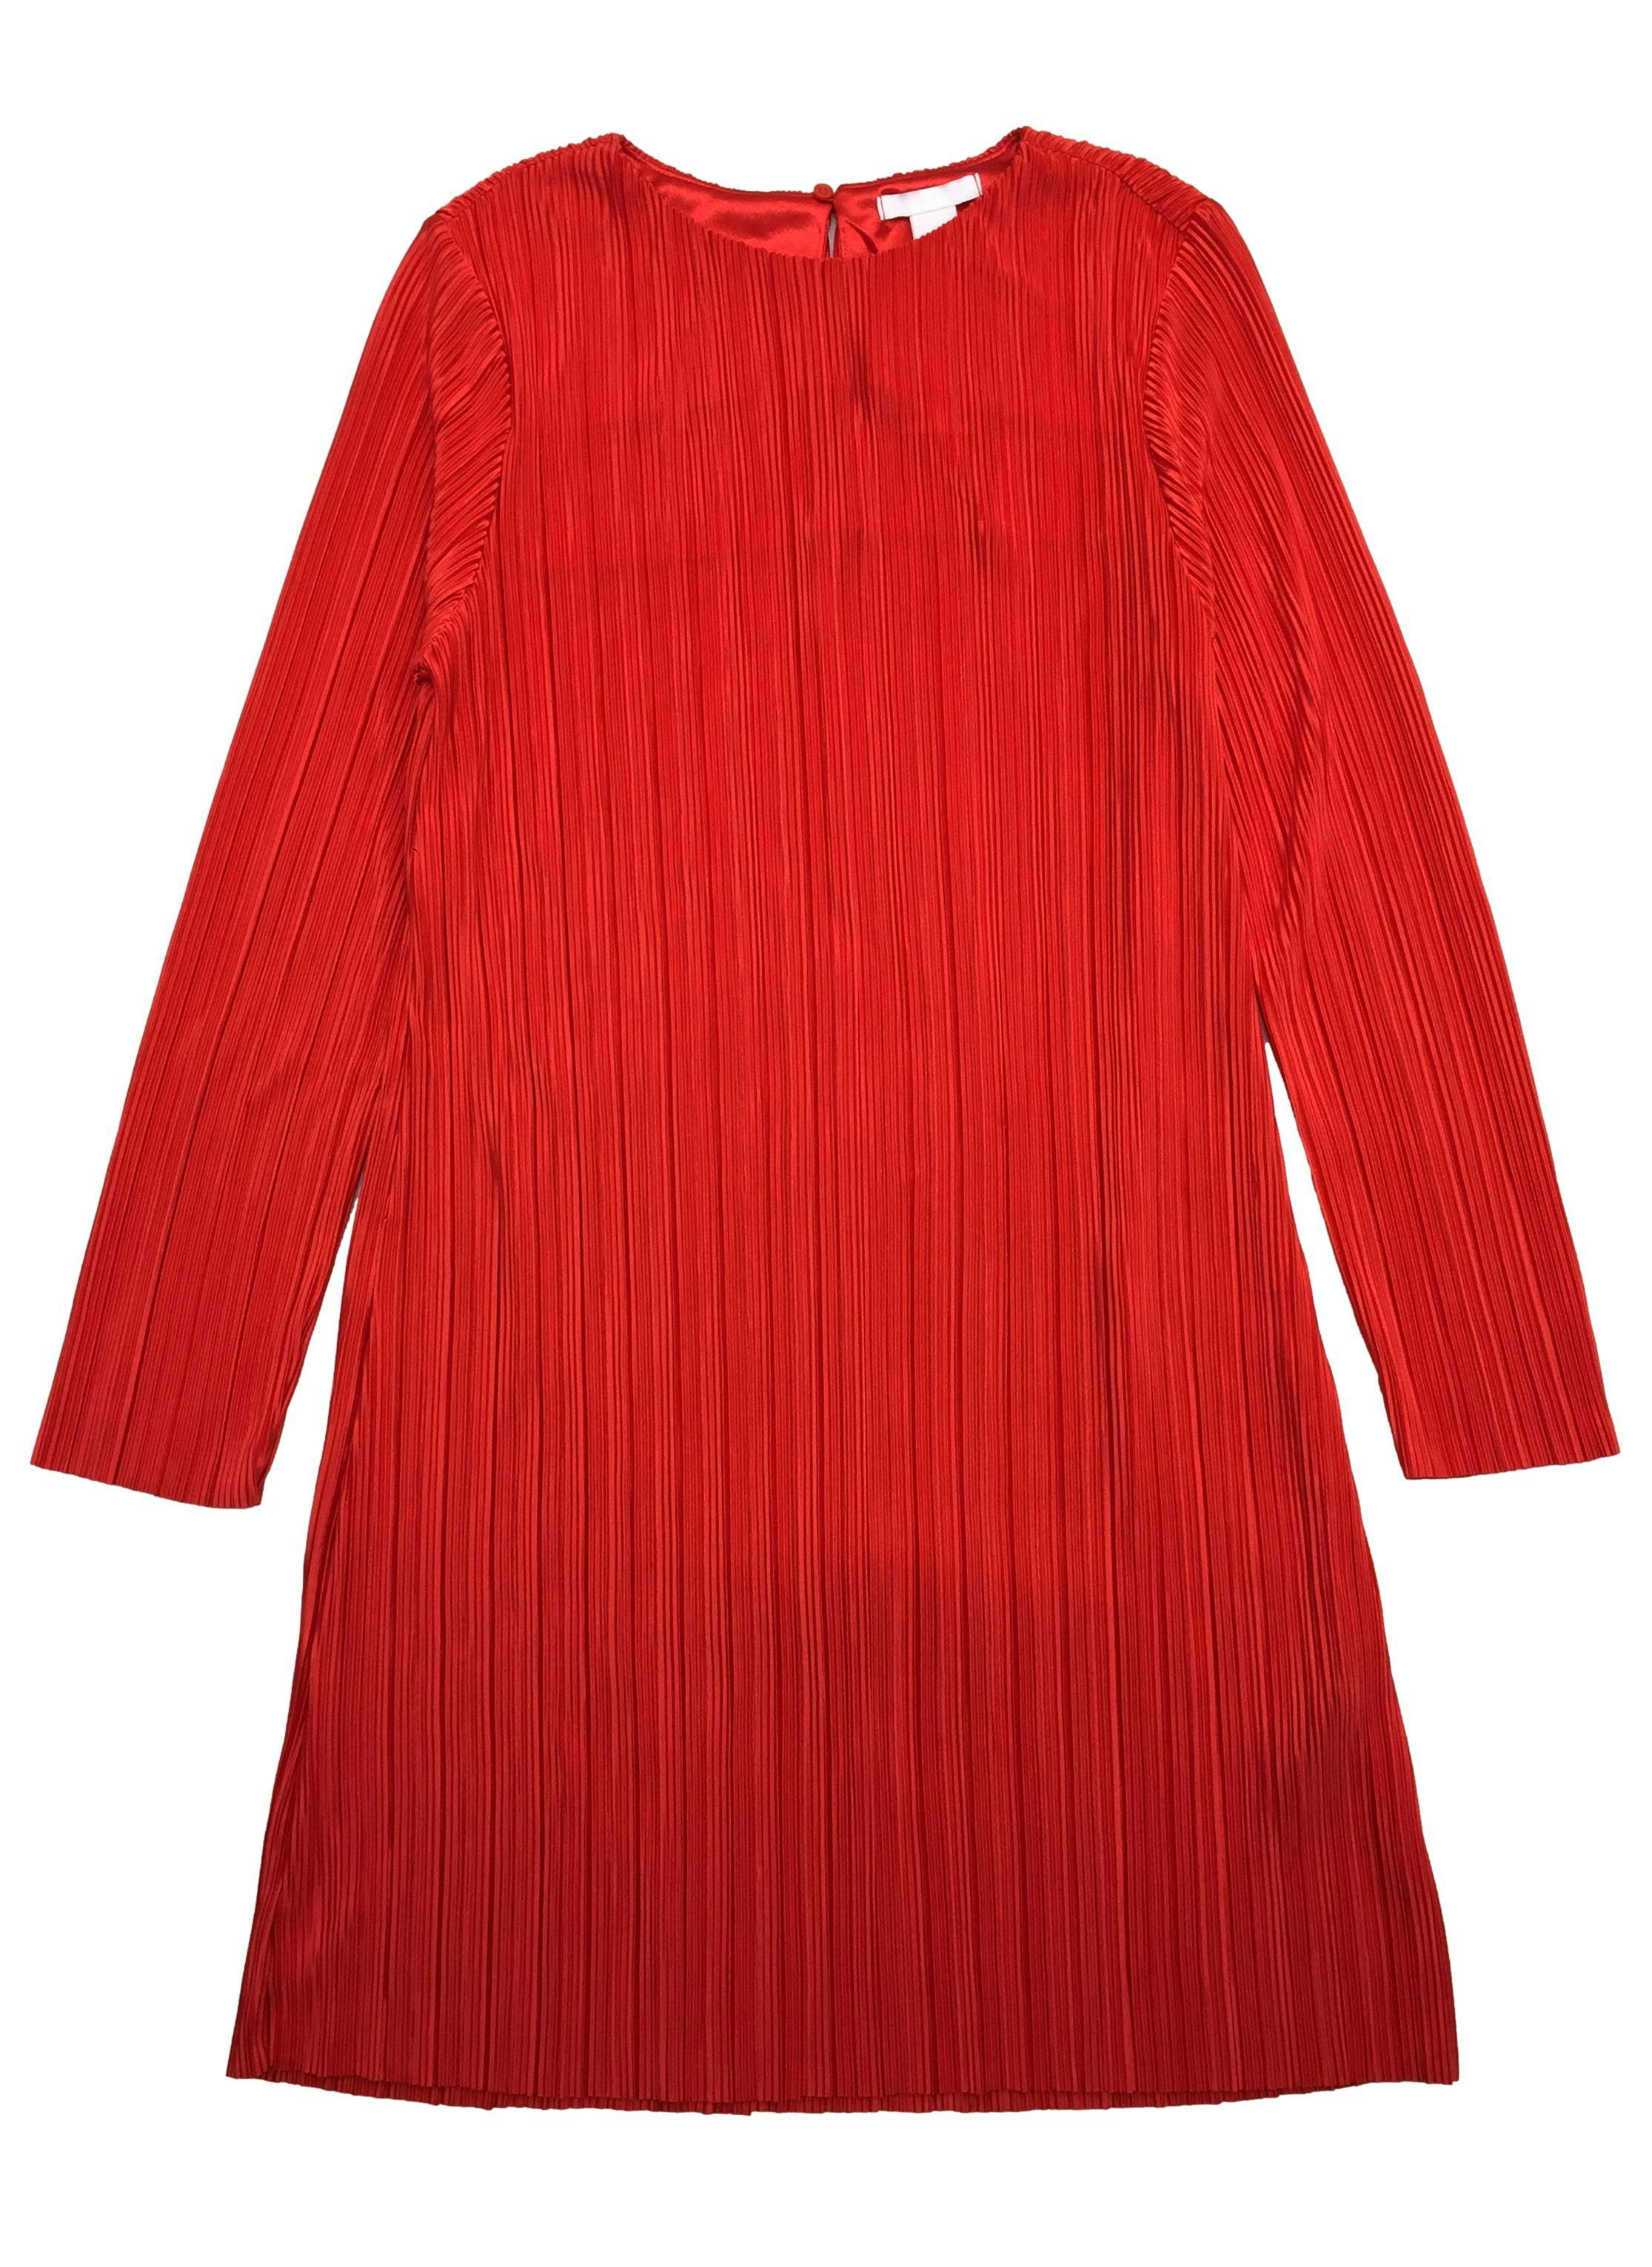 Vestido H&M rojo plisado manga larga. Busto 95cm Largo 88cm. Nuevo con etiqueta